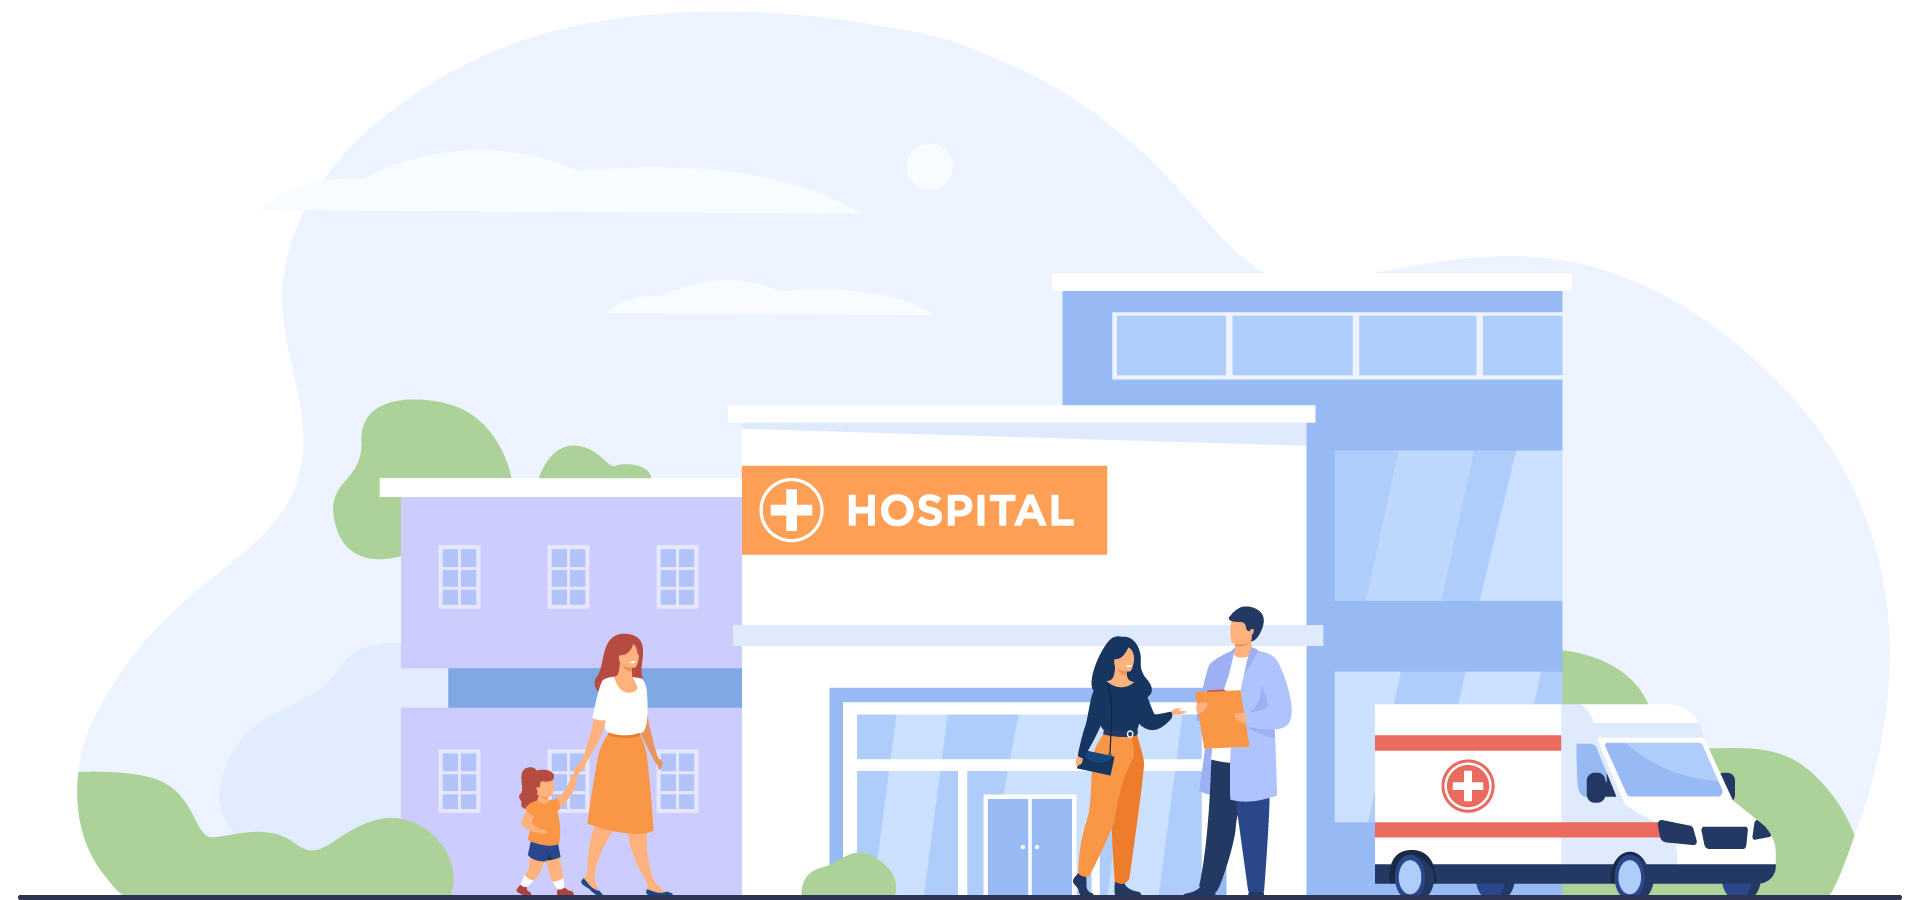 Imagen dibujada de un hospital amplio en el fondo, y en el primer plano hay una madre y su hija caminando hacia el hospital, una mujer conversando con un médico y una ambulancia estacionada.